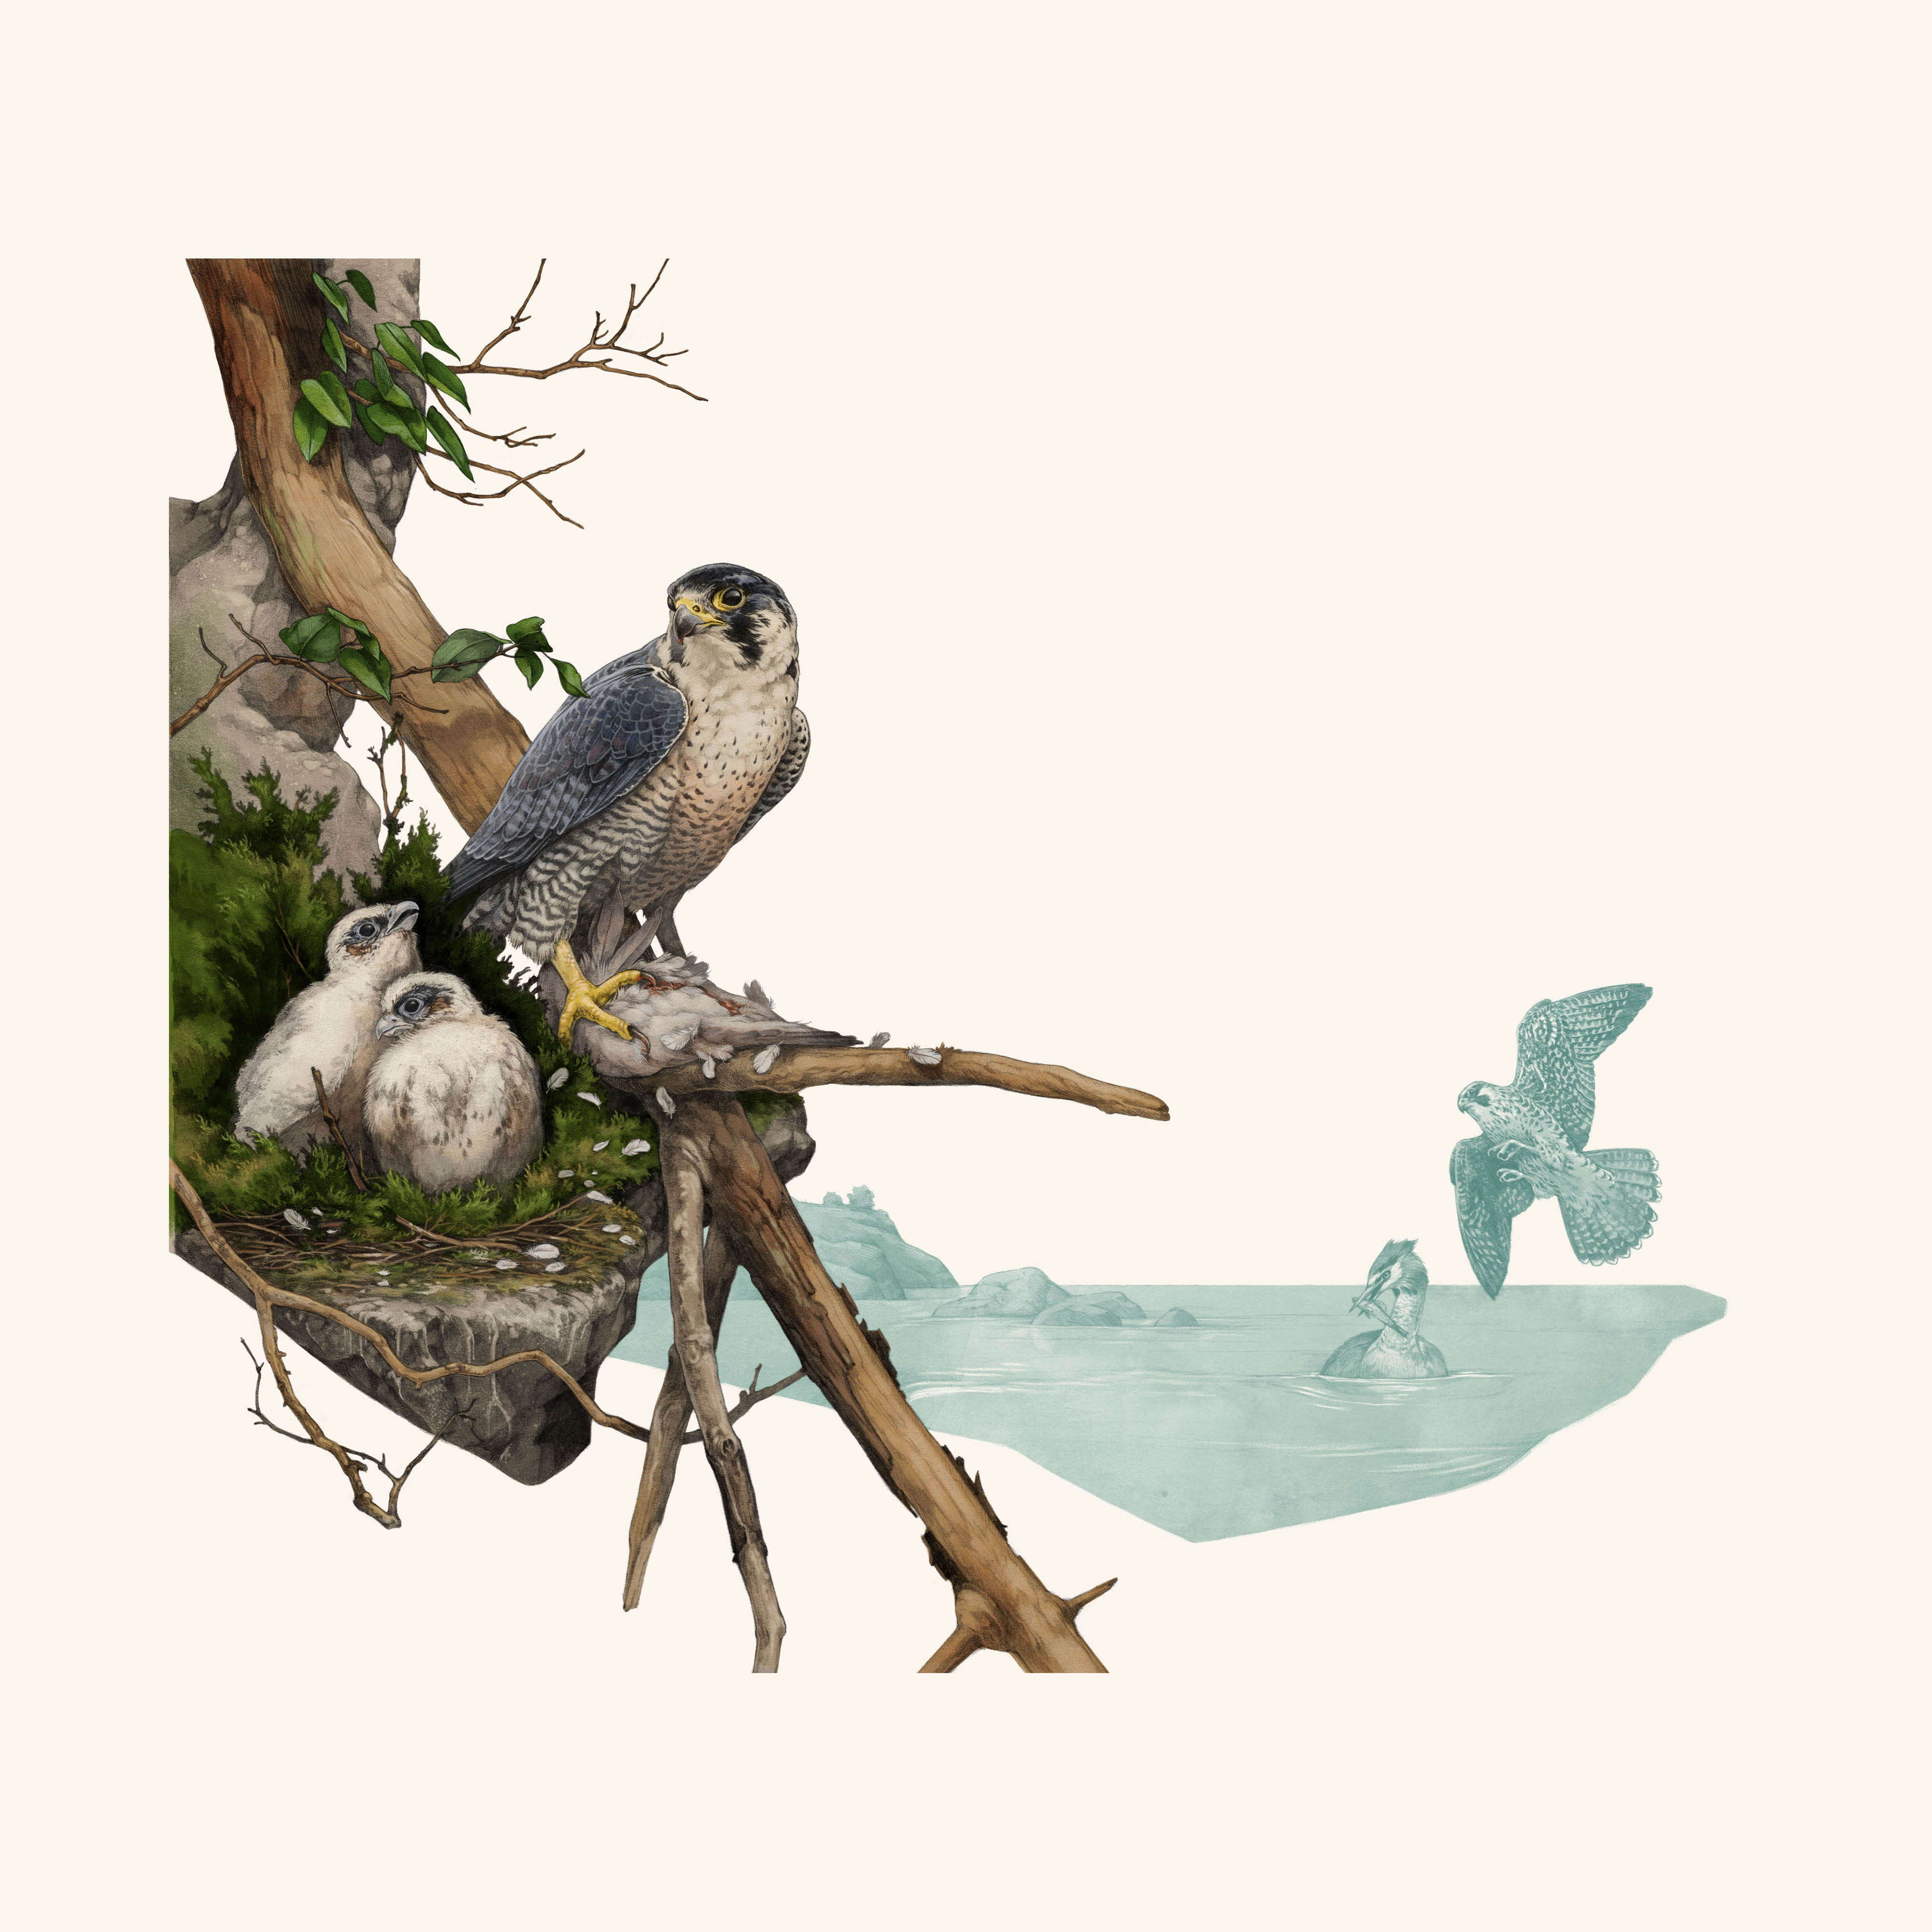 un halcón peregrino se sienta en una rama junto a un nido con dos pájaros jóvenes sentados en el nido.